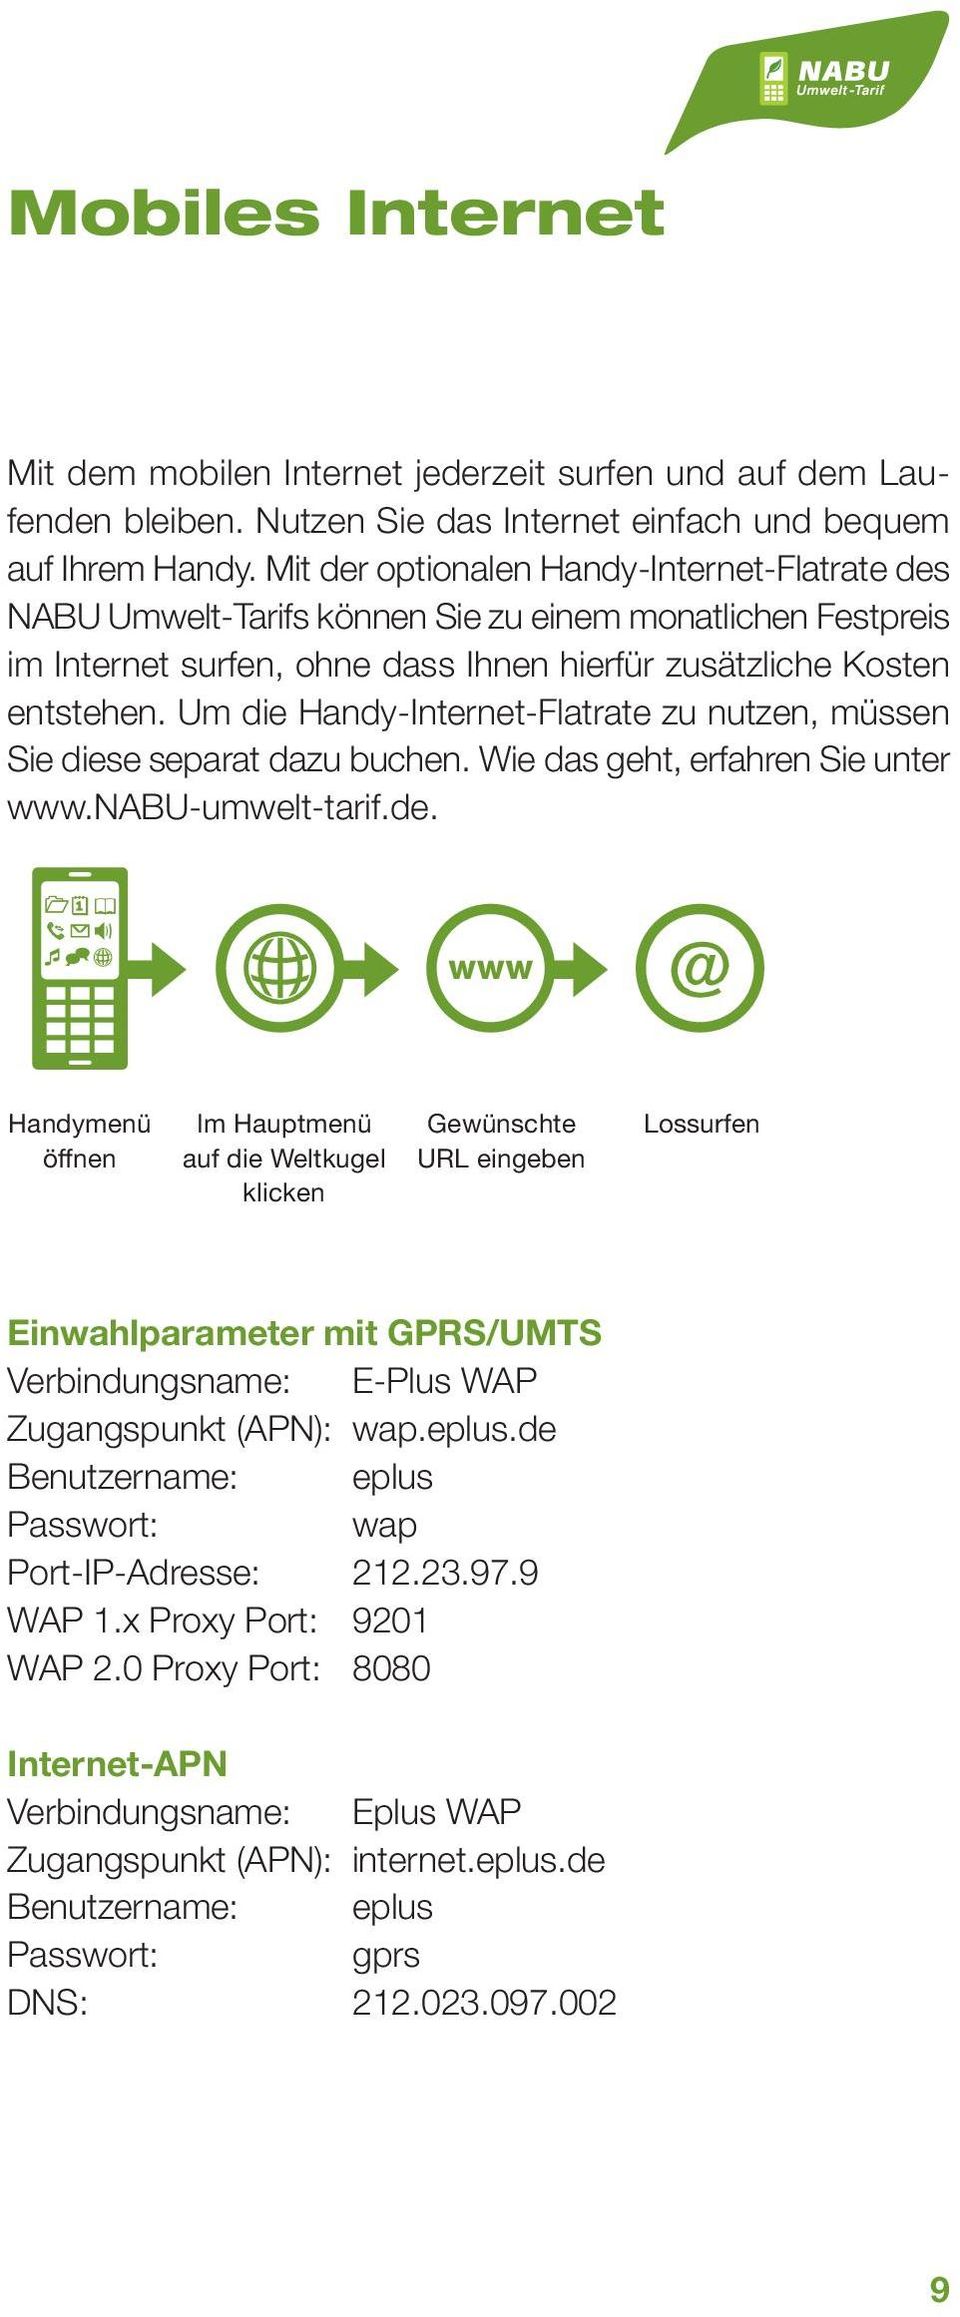 Um die Handy-Internet-Flatrate zu nutzen, müssen Sie diese separat dazu buchen. Wie das geht, erfahren Sie unter www.nabu-umwelt-tarif.de.